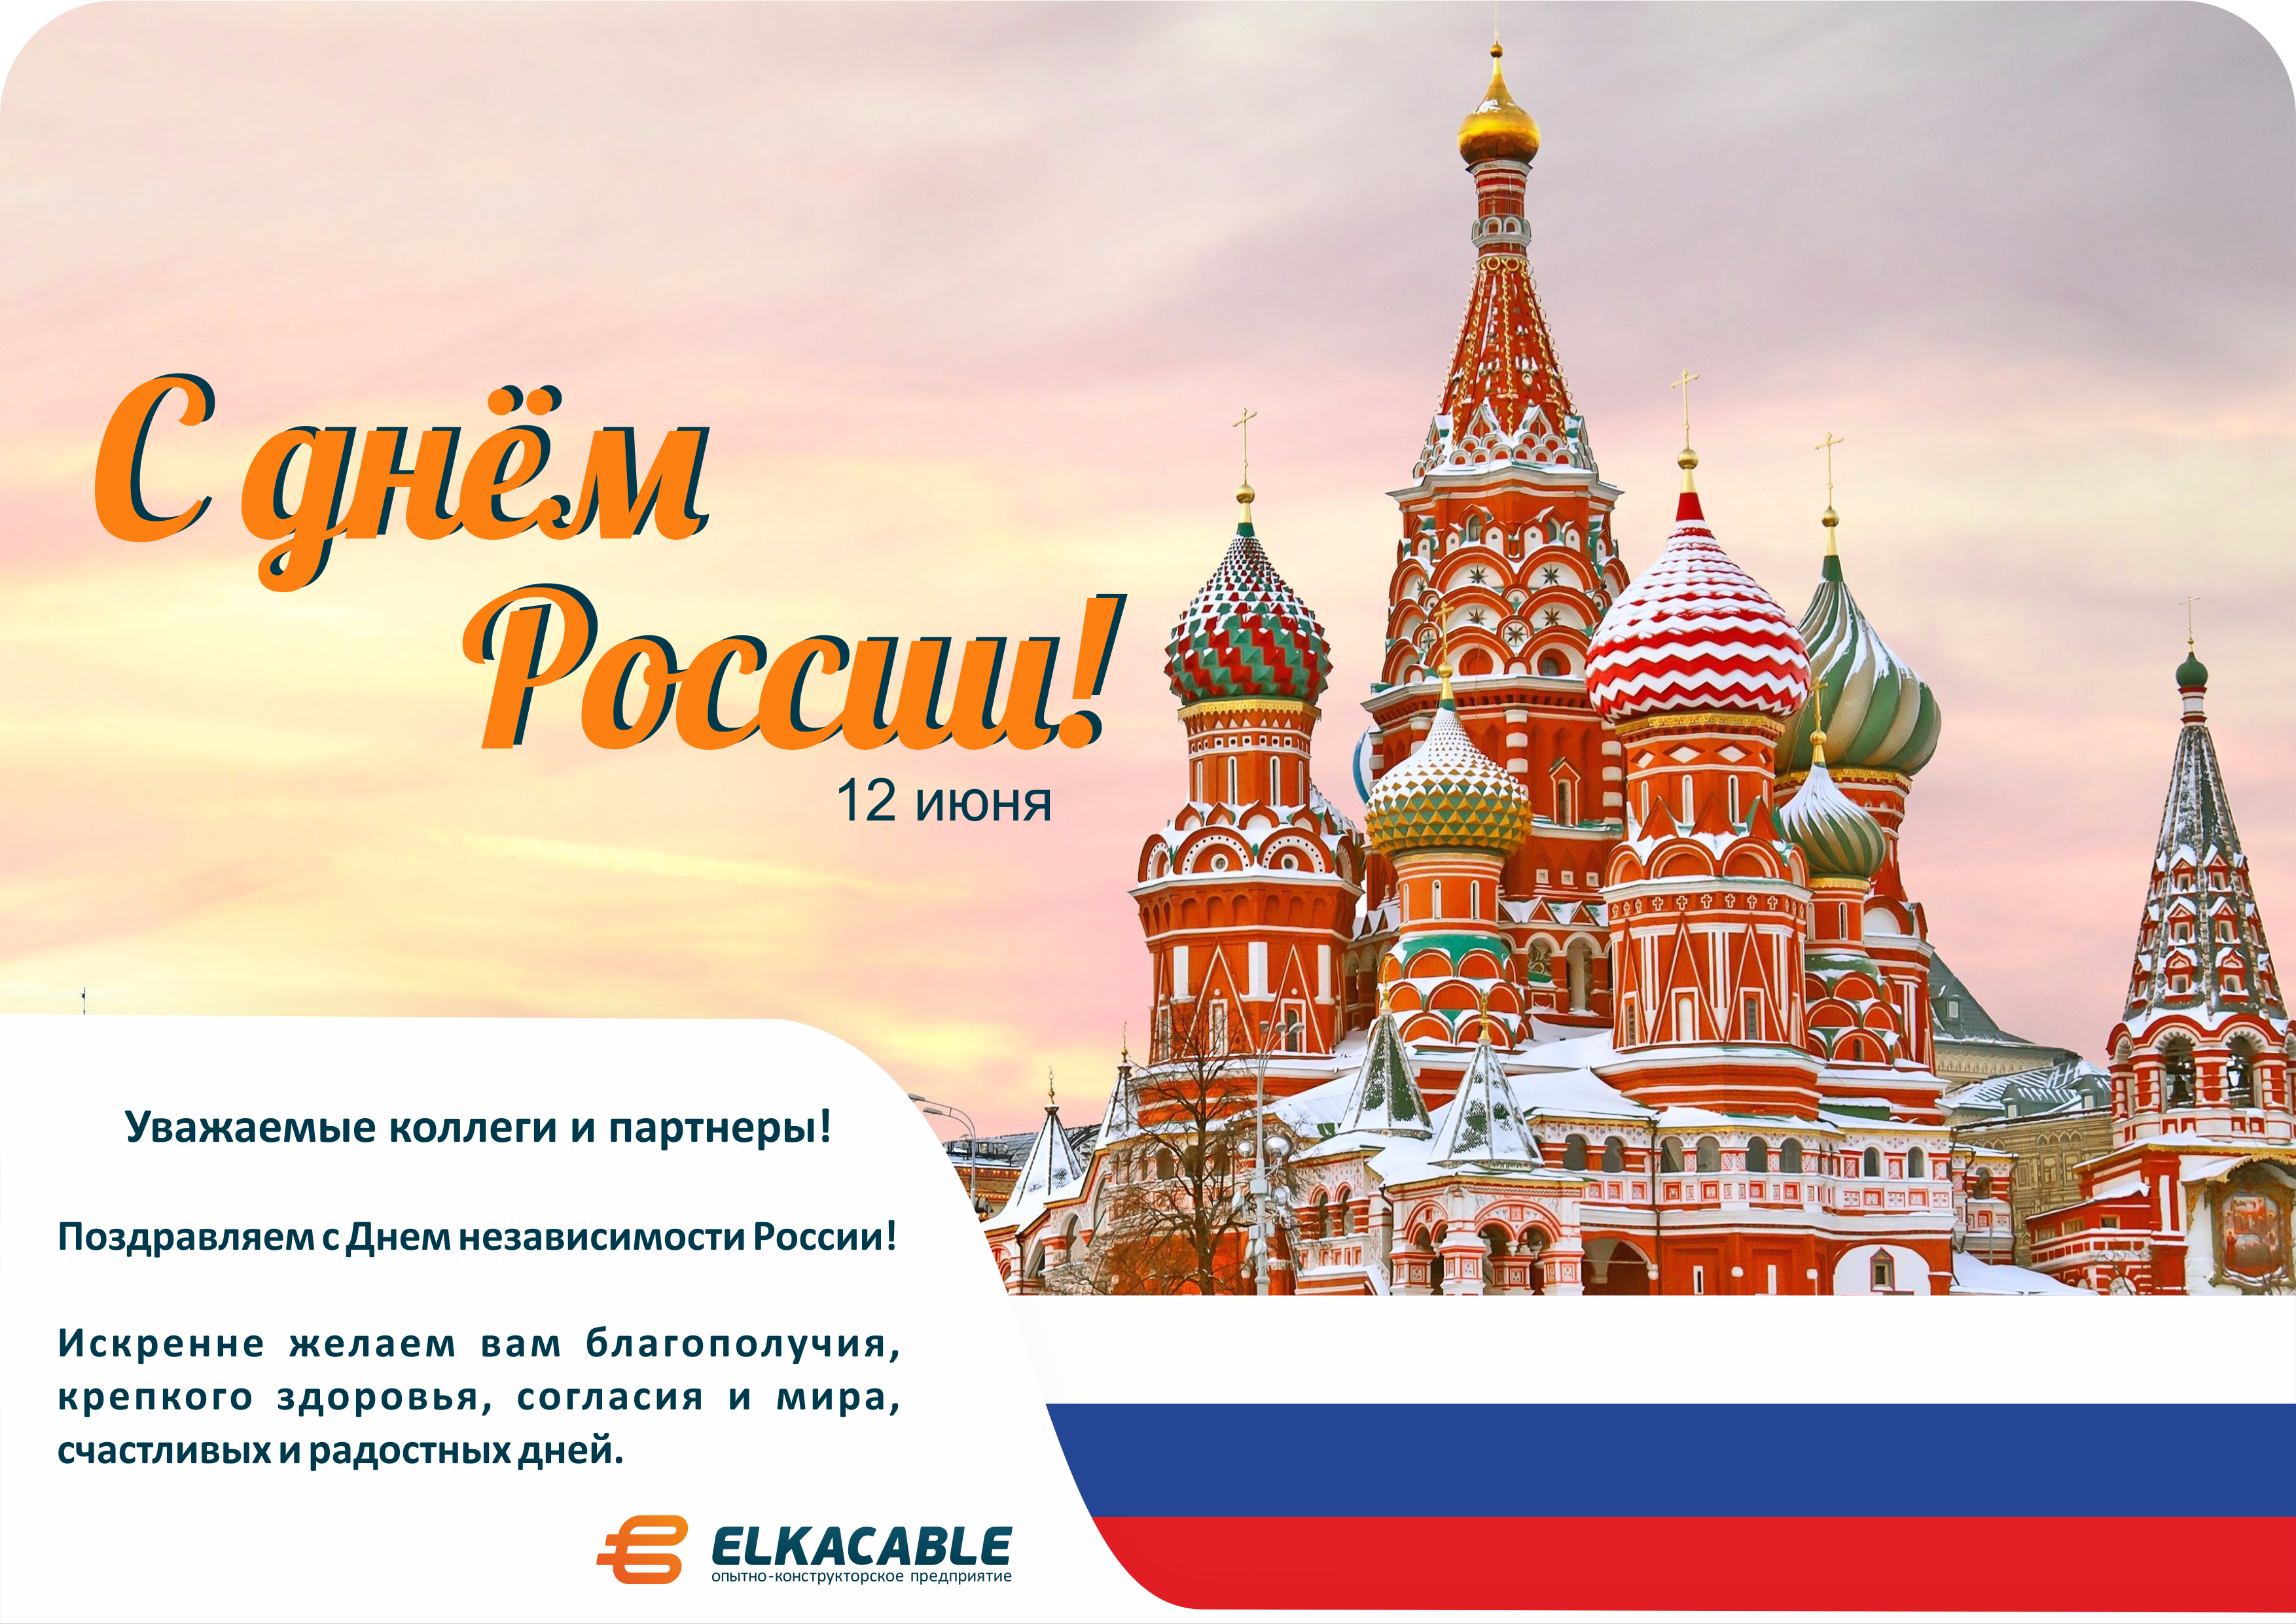 12 июня вопросы. С днём России 12 июня. Поздравления с днём Росси. С днем России поздравления. Поздравления с днём независимости России.